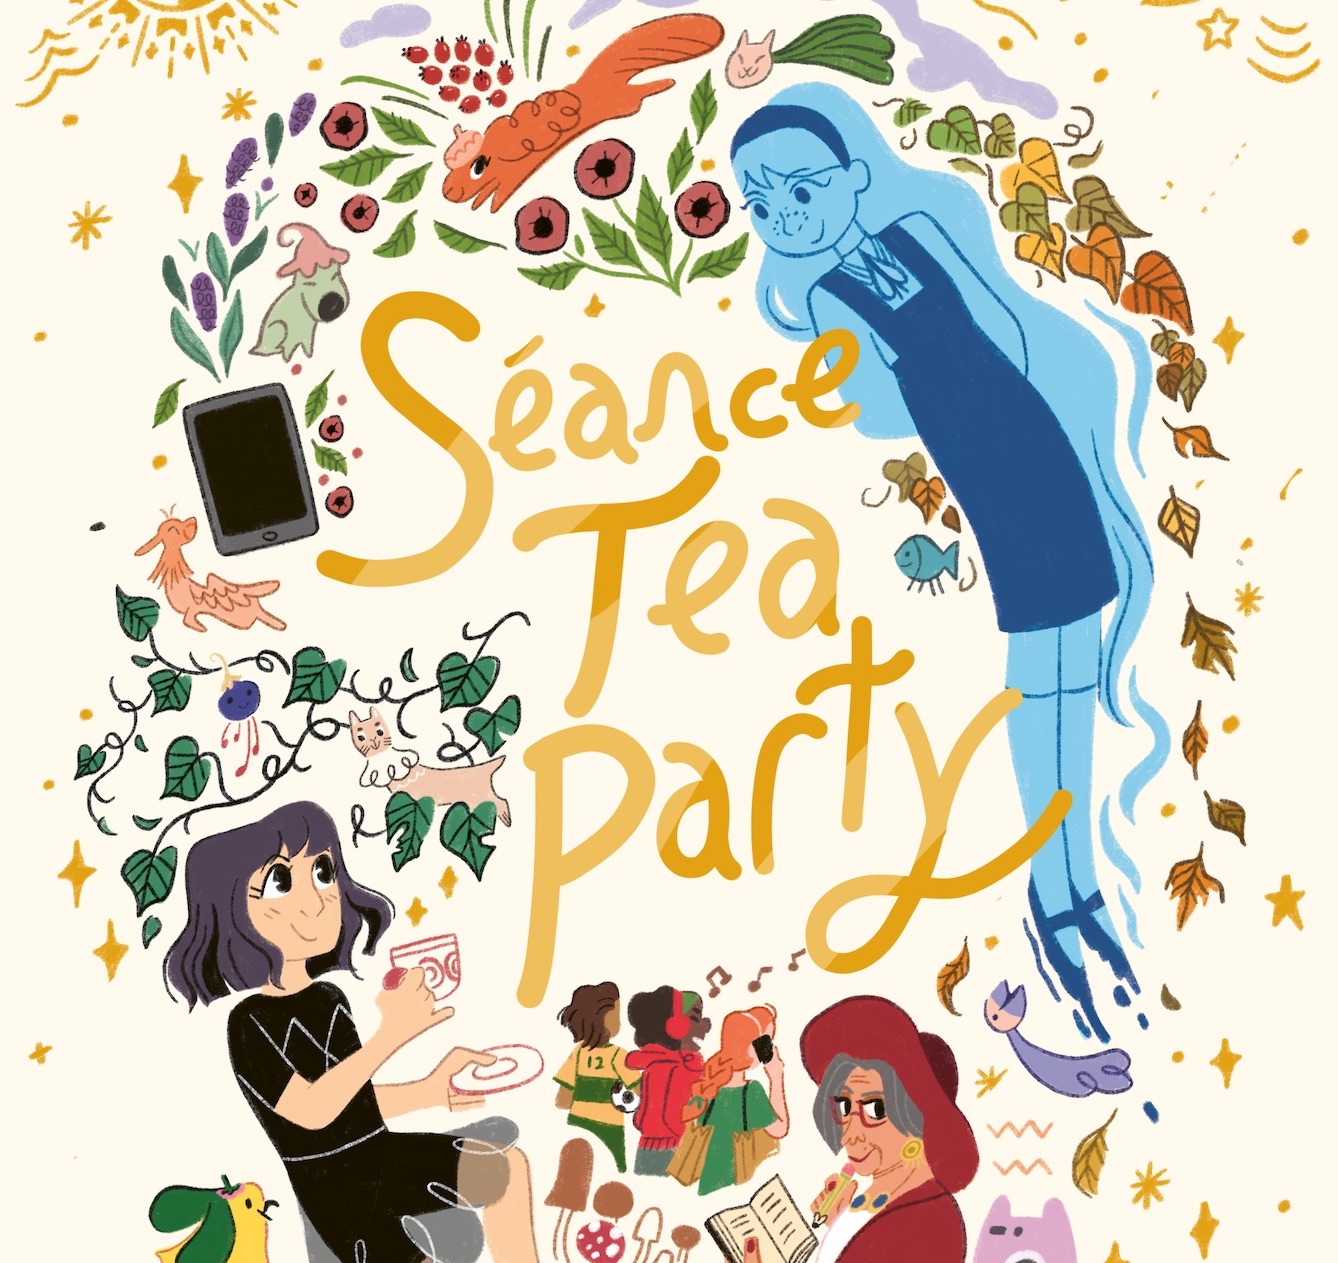 'Séance Tea Party' review